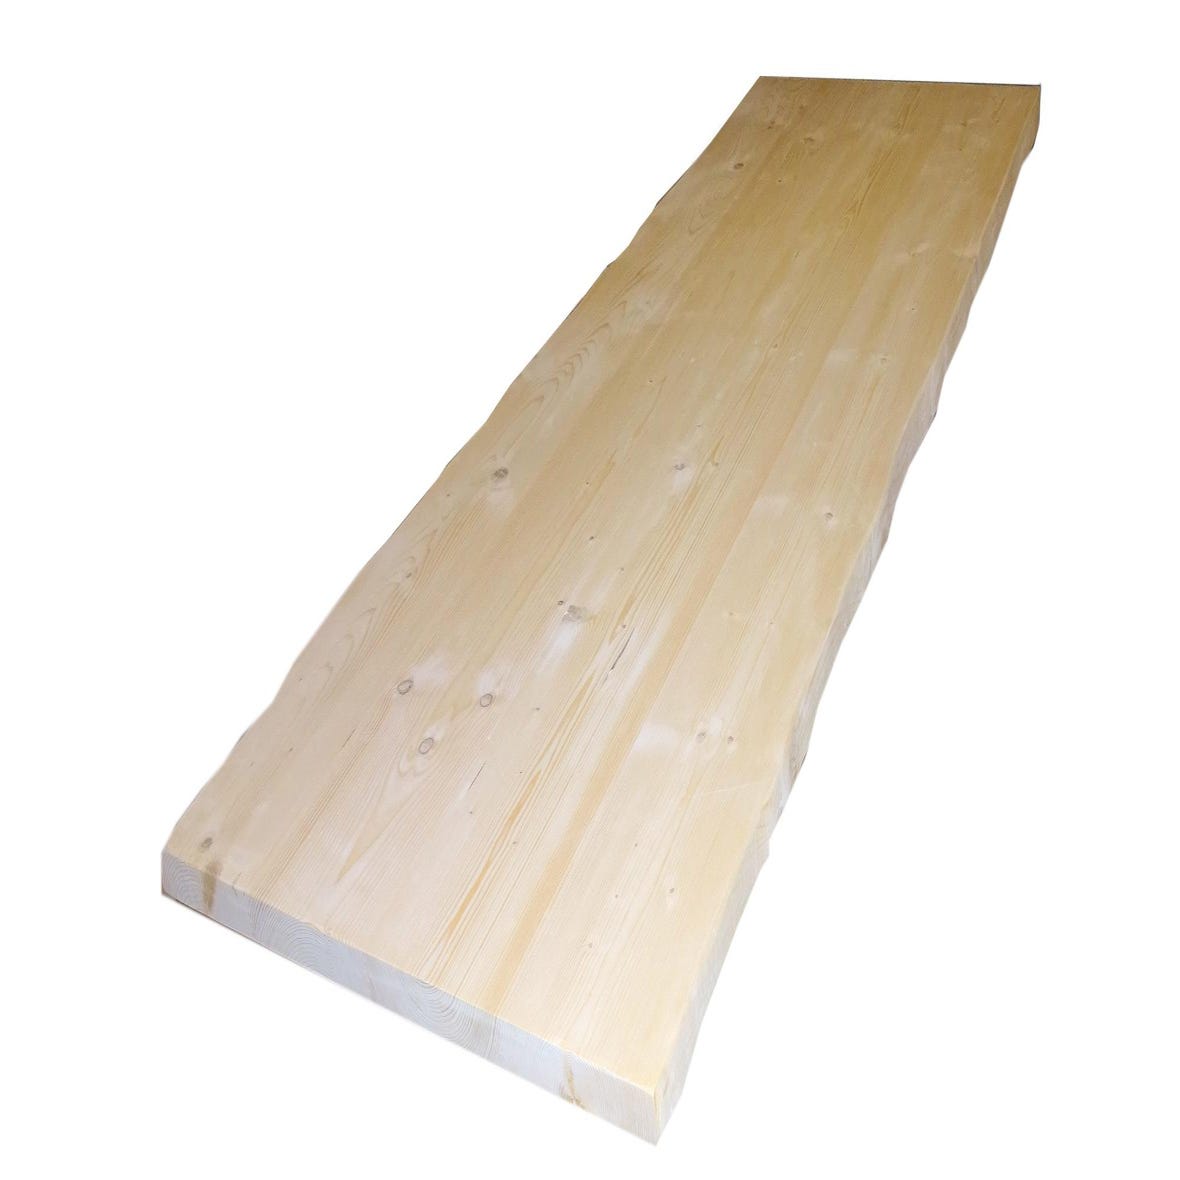 Tavola legno massello Abete in legno 1° scelta 90 x 240 cm Sp 45 mm  naturale